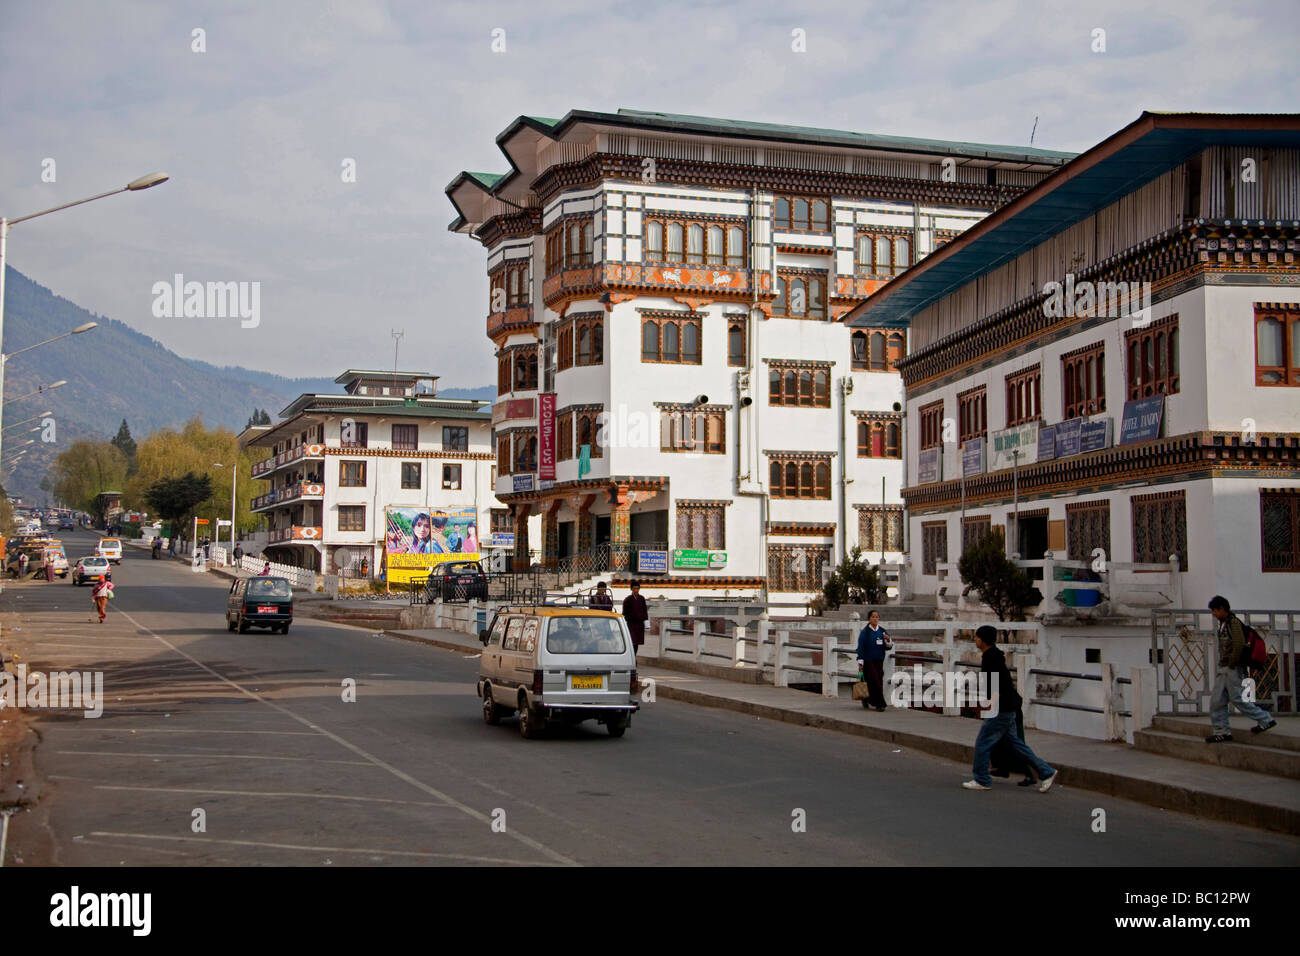 Maison typique immeubles et commerces à Thimphu, Bhoutan Asie 91352 Bhutan-Thimphu l'horizontale Banque D'Images